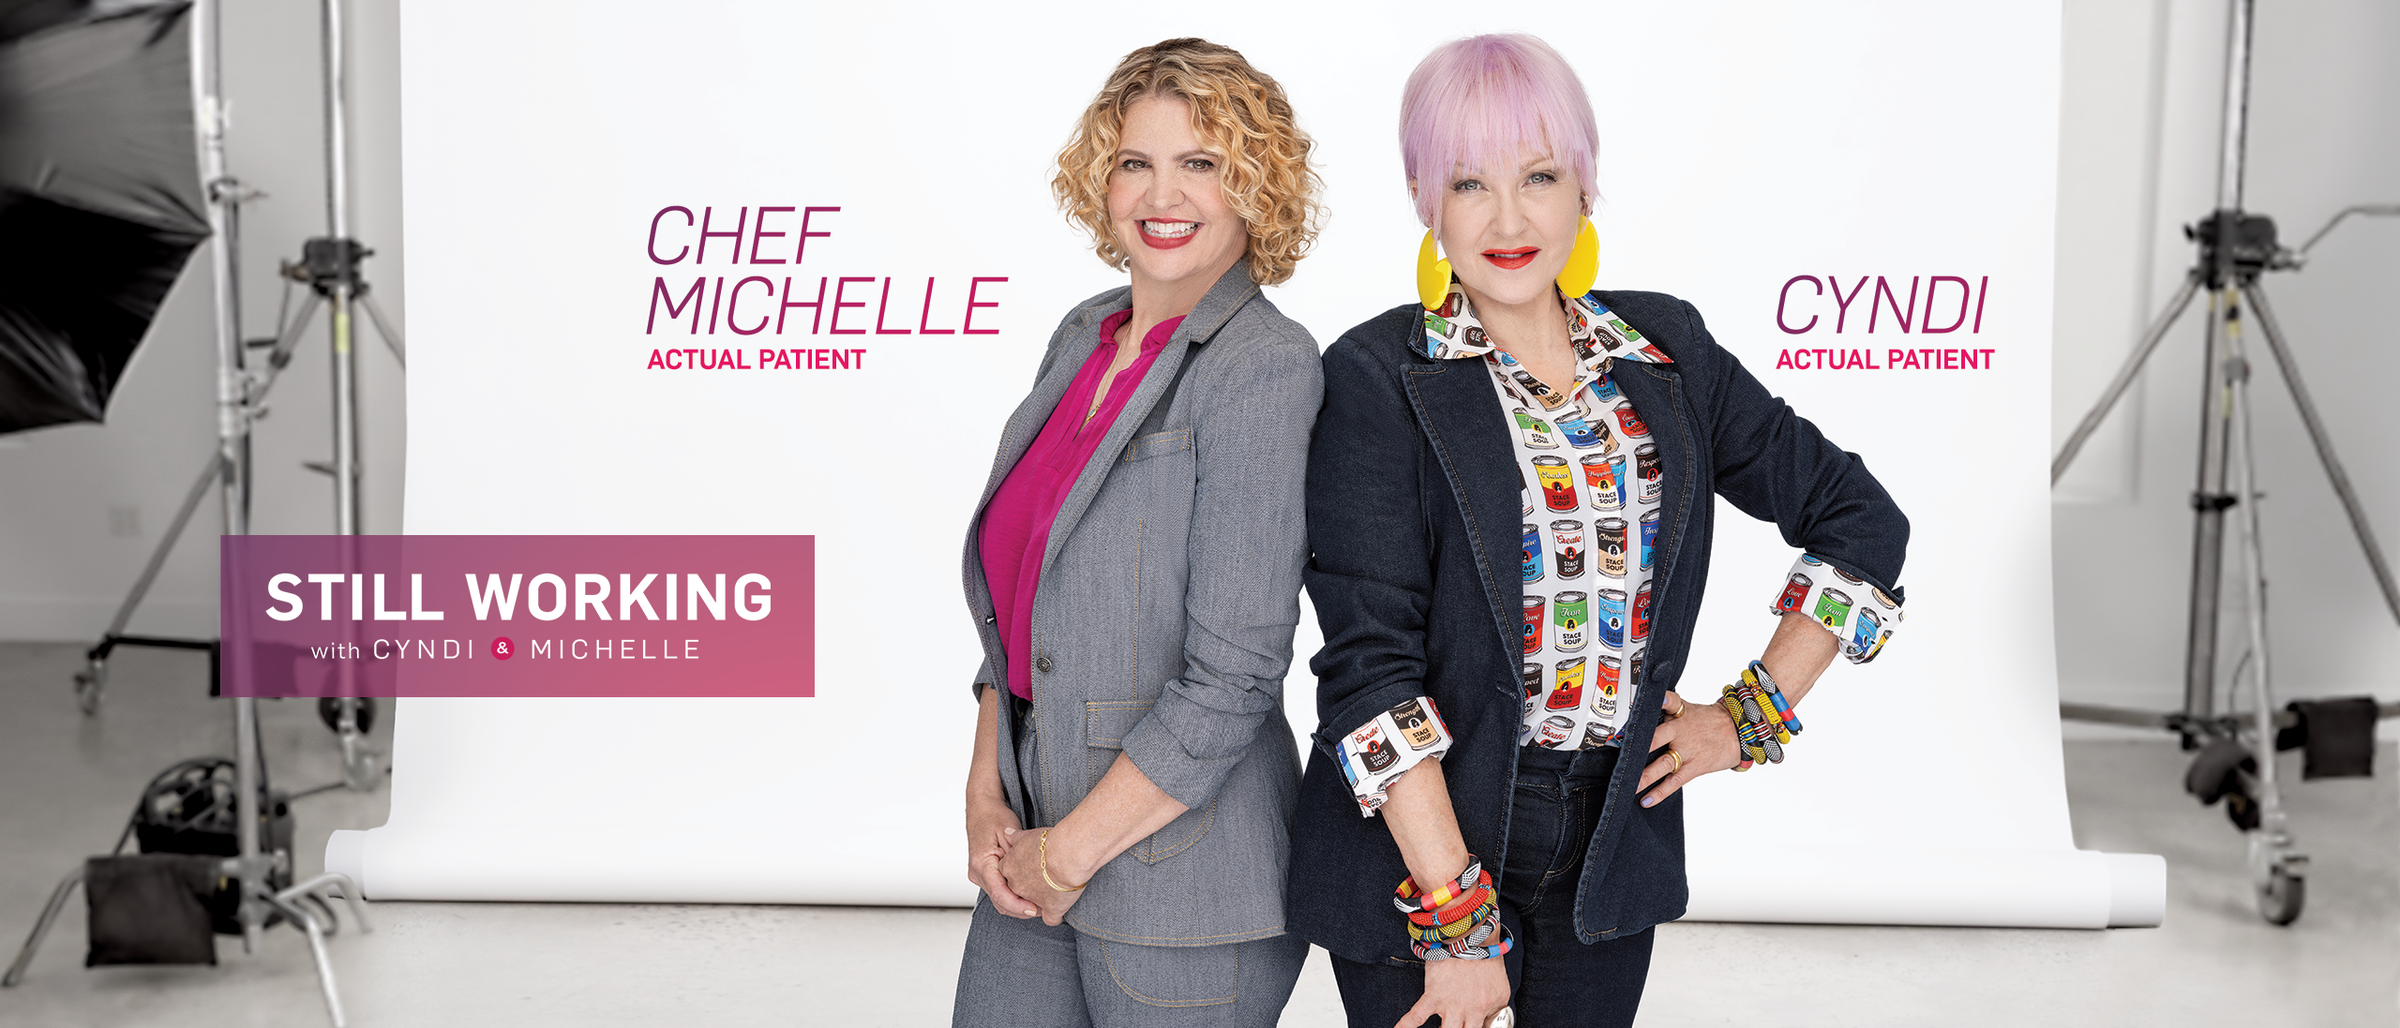 Cyndi Lauper and Chef Michelle Bernstein